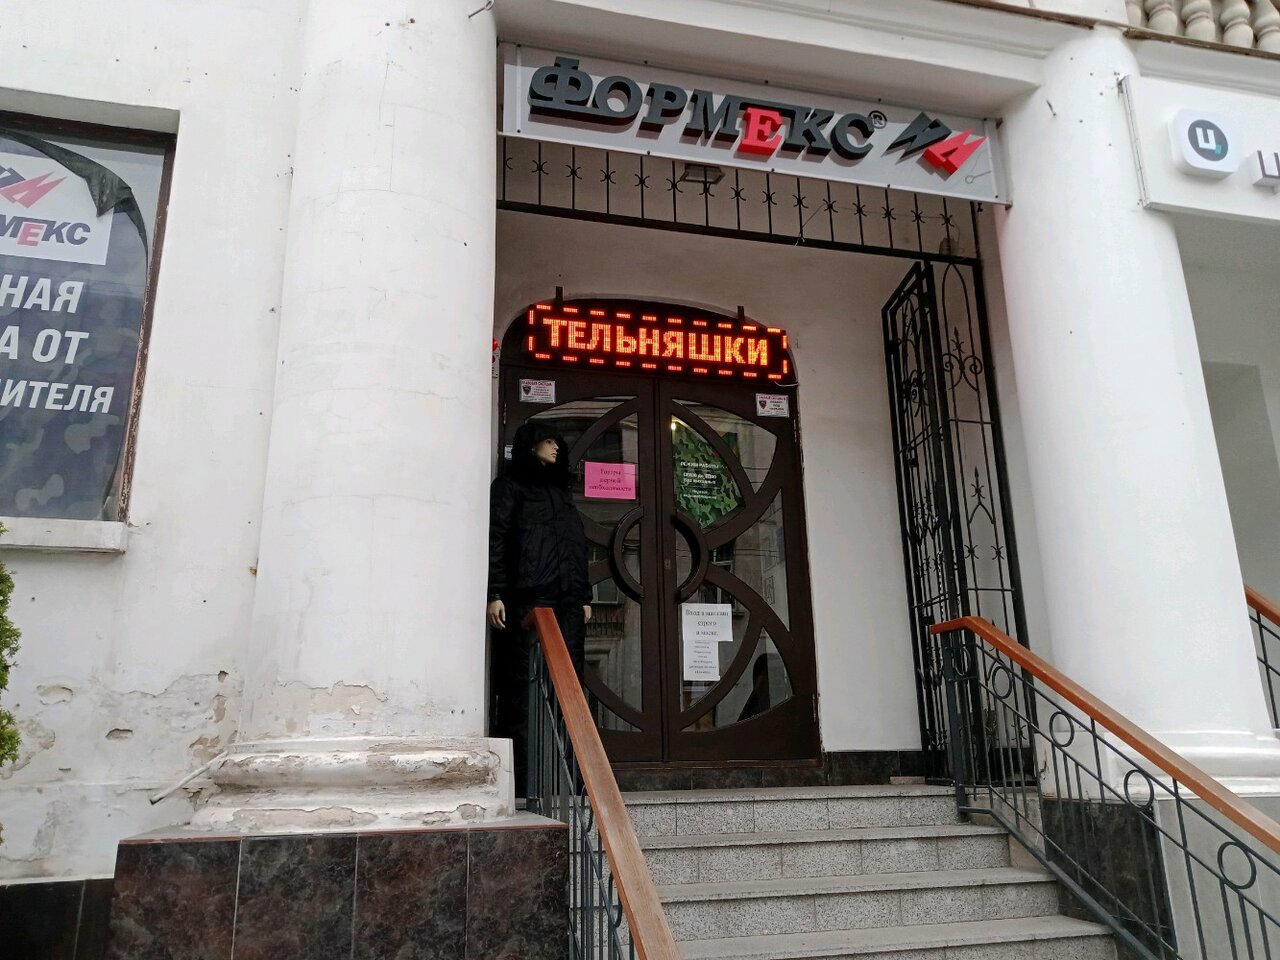 Вход в армейский магазин "Формекс" на Генерала Петрова в Севастополе